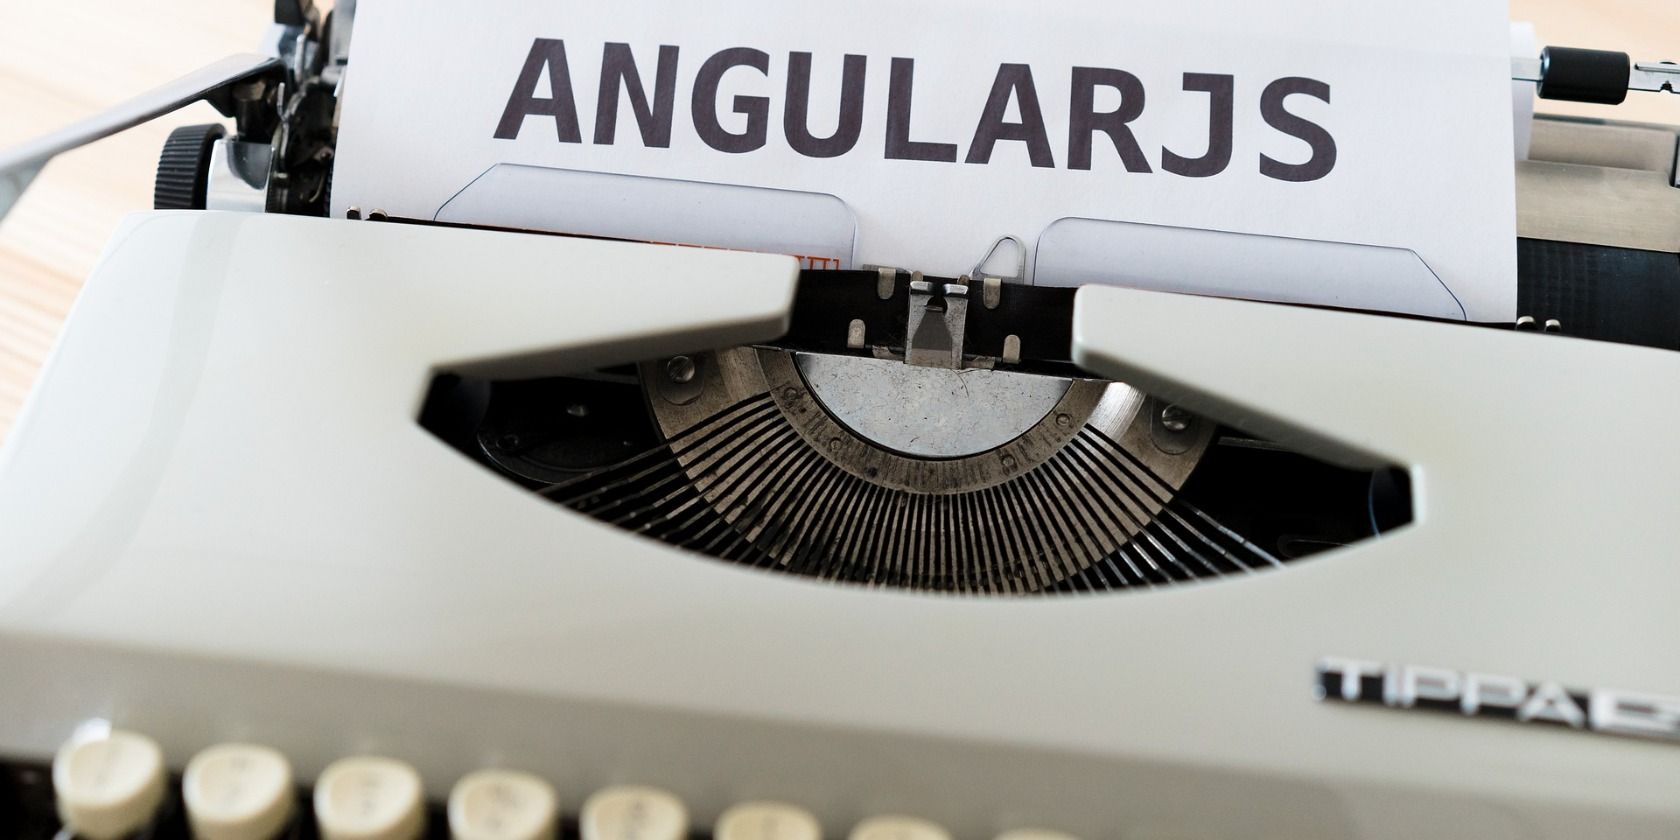 AngularJS on a typewriter